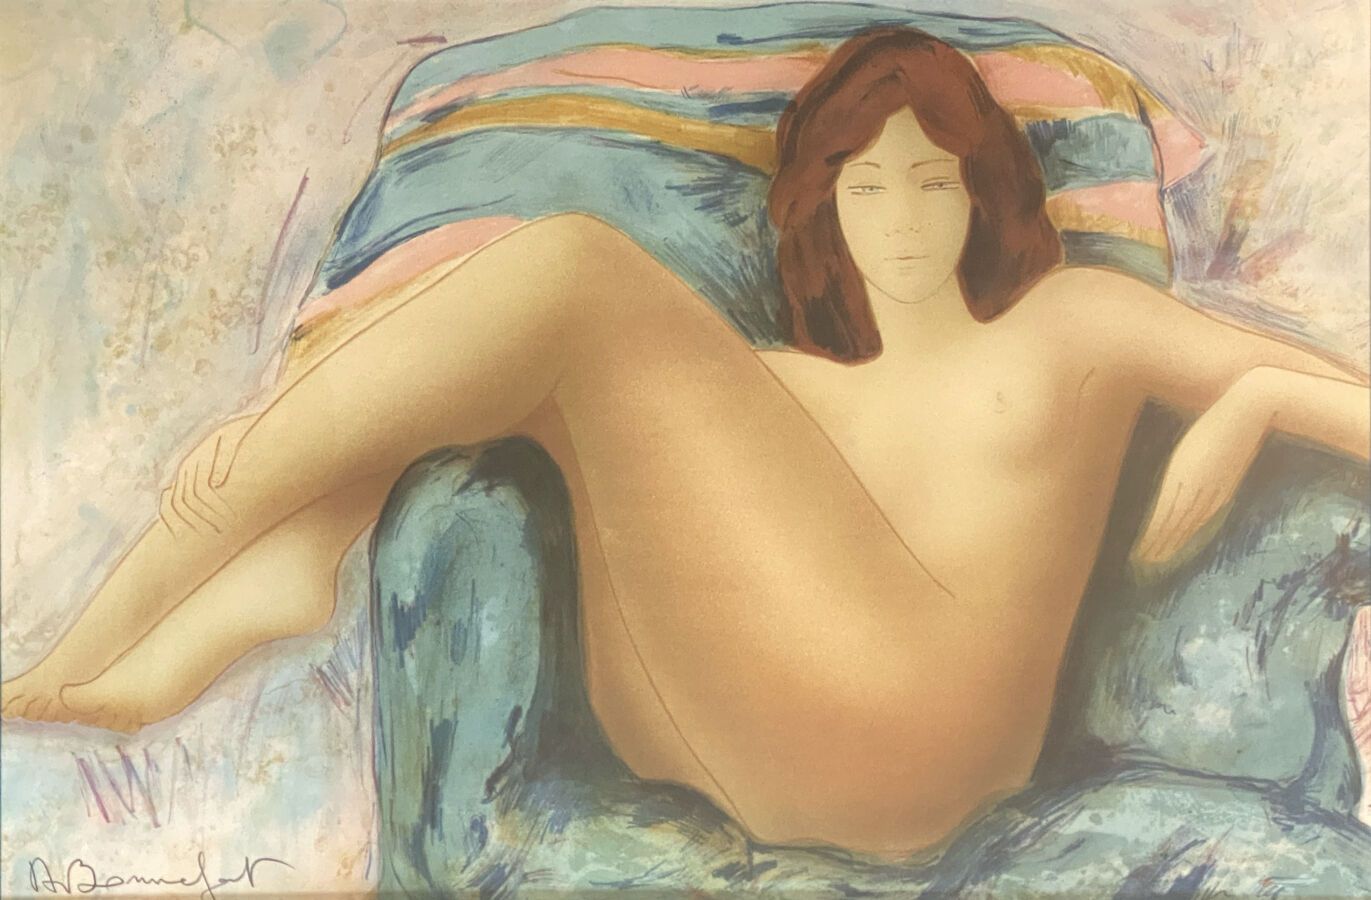 Null 阿兰-博内弗瓦(生于1936年)

在扶手椅上的裸体

纸上水墨画，左下方签名

高度34.5厘米 - 视线宽度52厘米